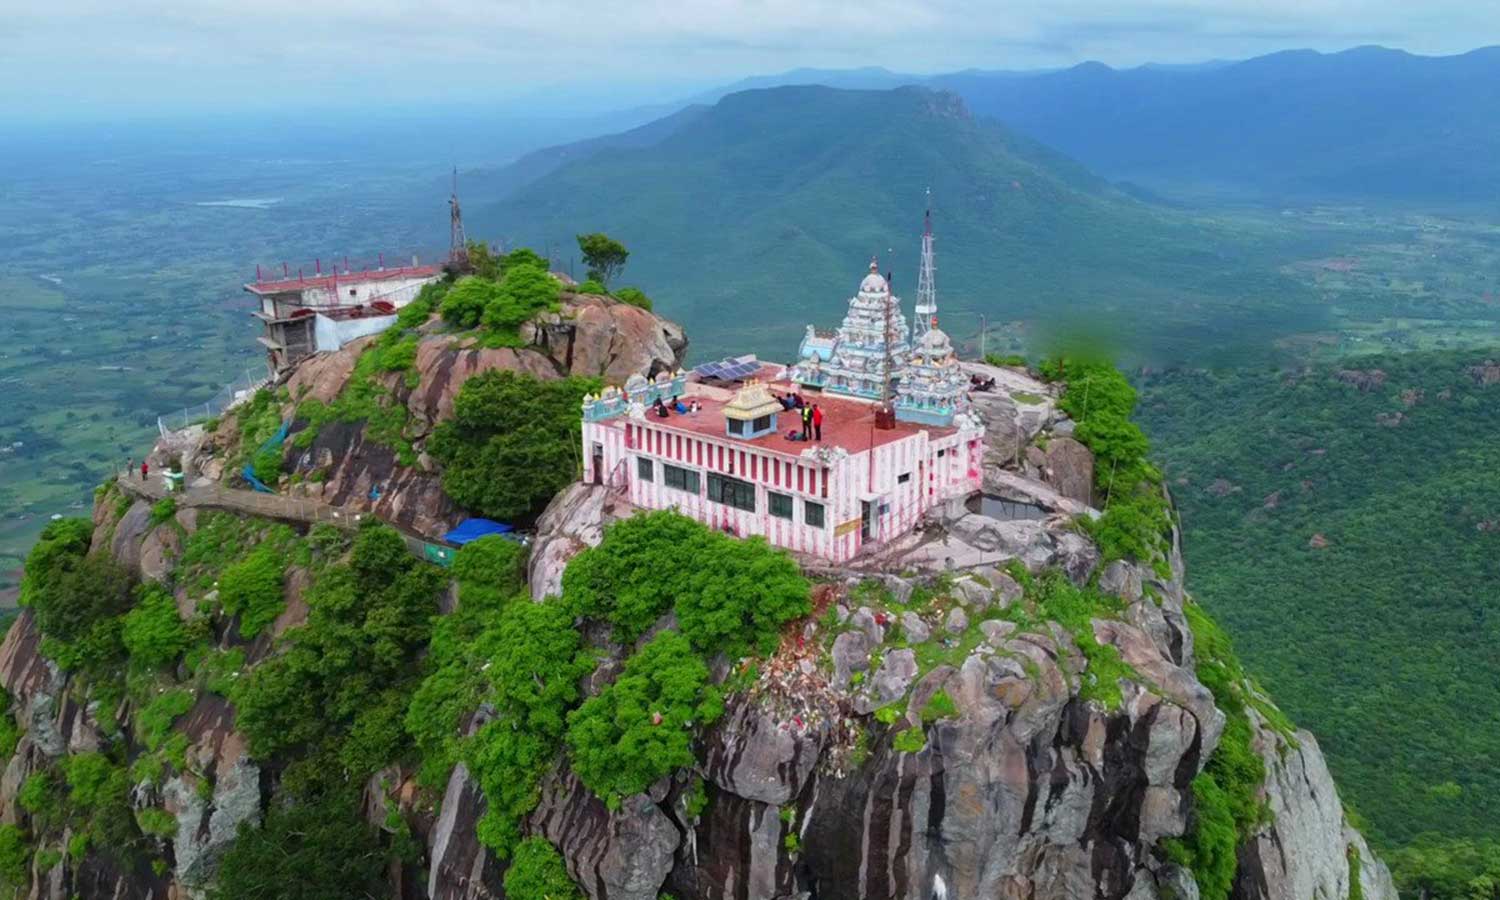 பர்வதமலை மல்லிகார்ஜுனசாமி திருக்கோவில் | Parvathamalai Hill Parvathamalai  Mallikarjuna Swamy temple